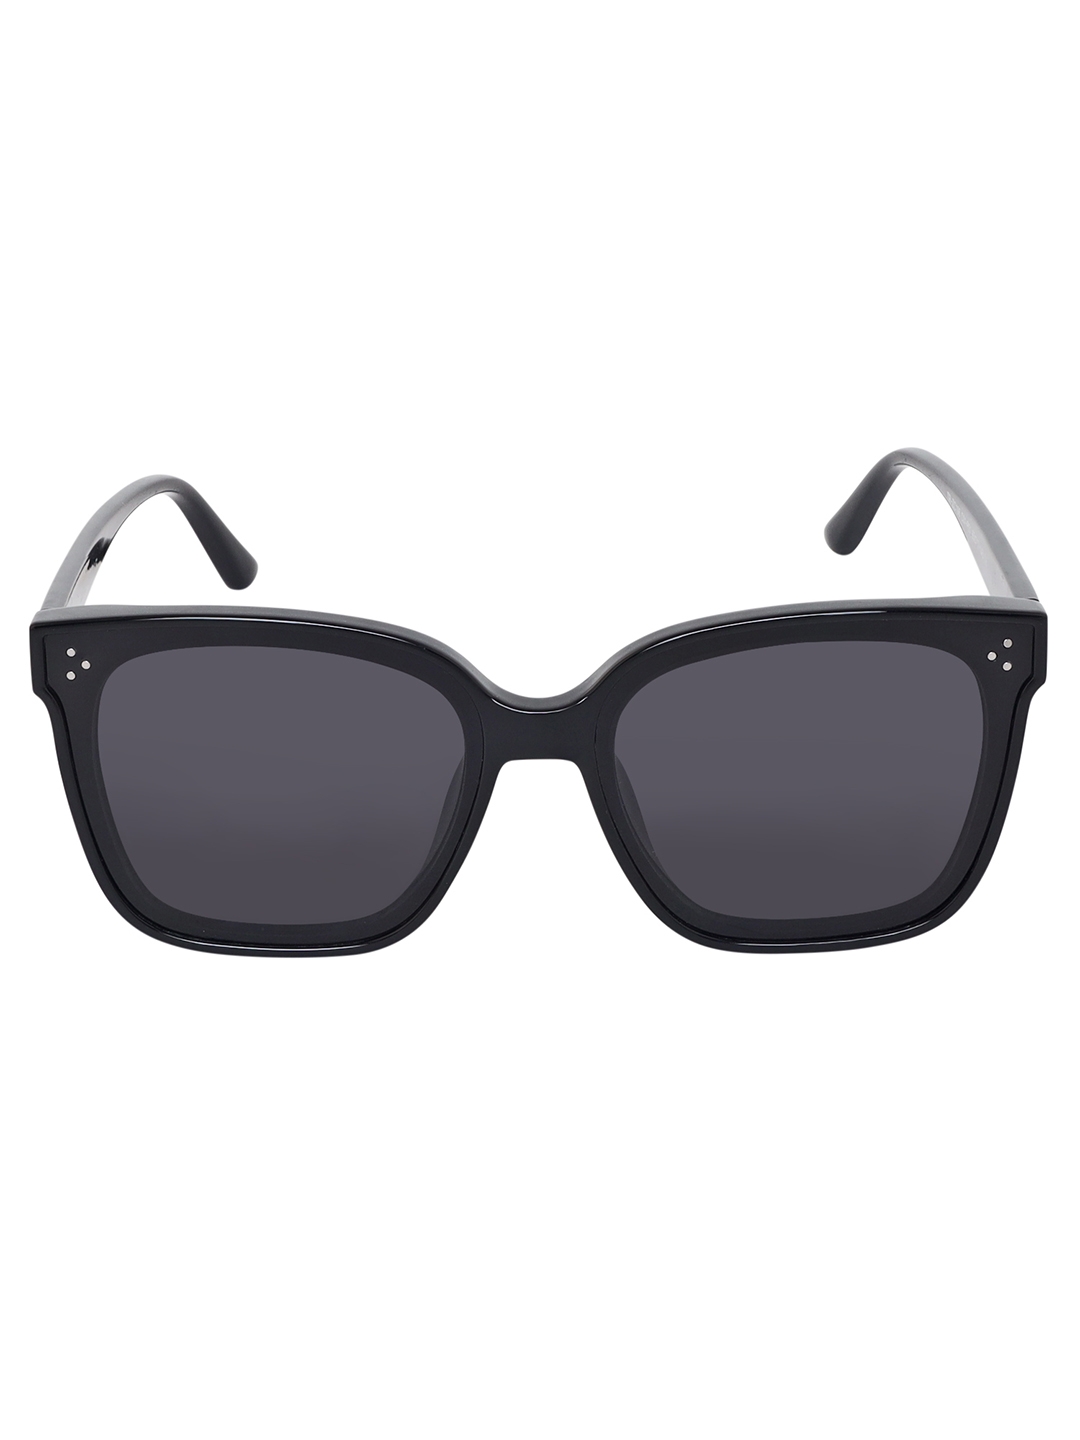 Aeropostale AERO_SUN_C106_C6 Summer SunGlasses with UV protection Polarized Anti Glare Summer Style Dark Black Cat Eye Lenses with Black acrylic Frame